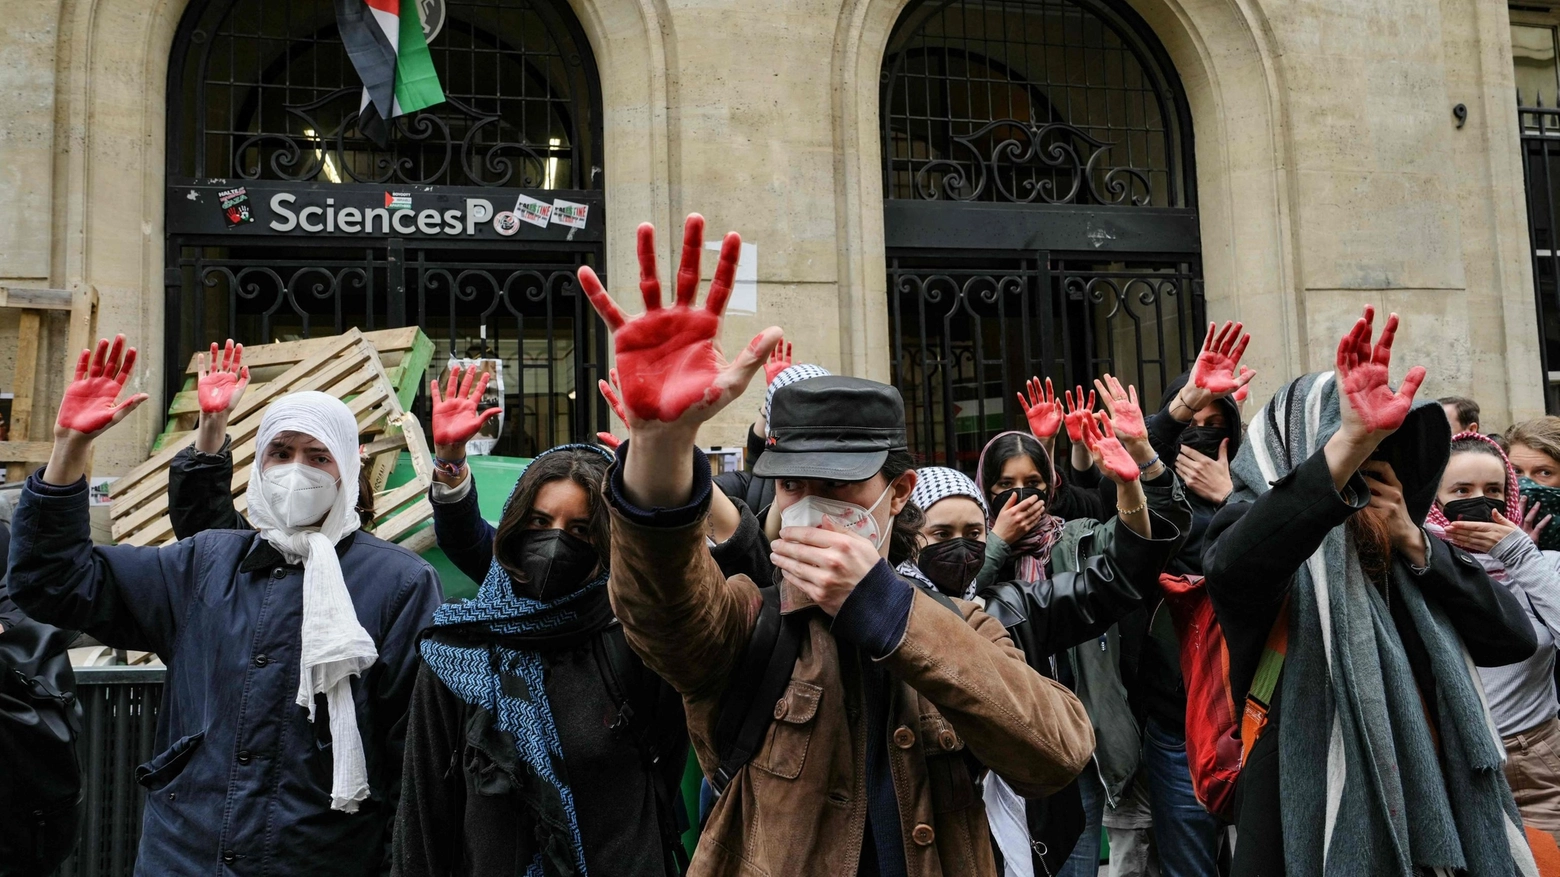 Studenti pro palestina occupano l'università Sciences Po a Parigi (Ansa)